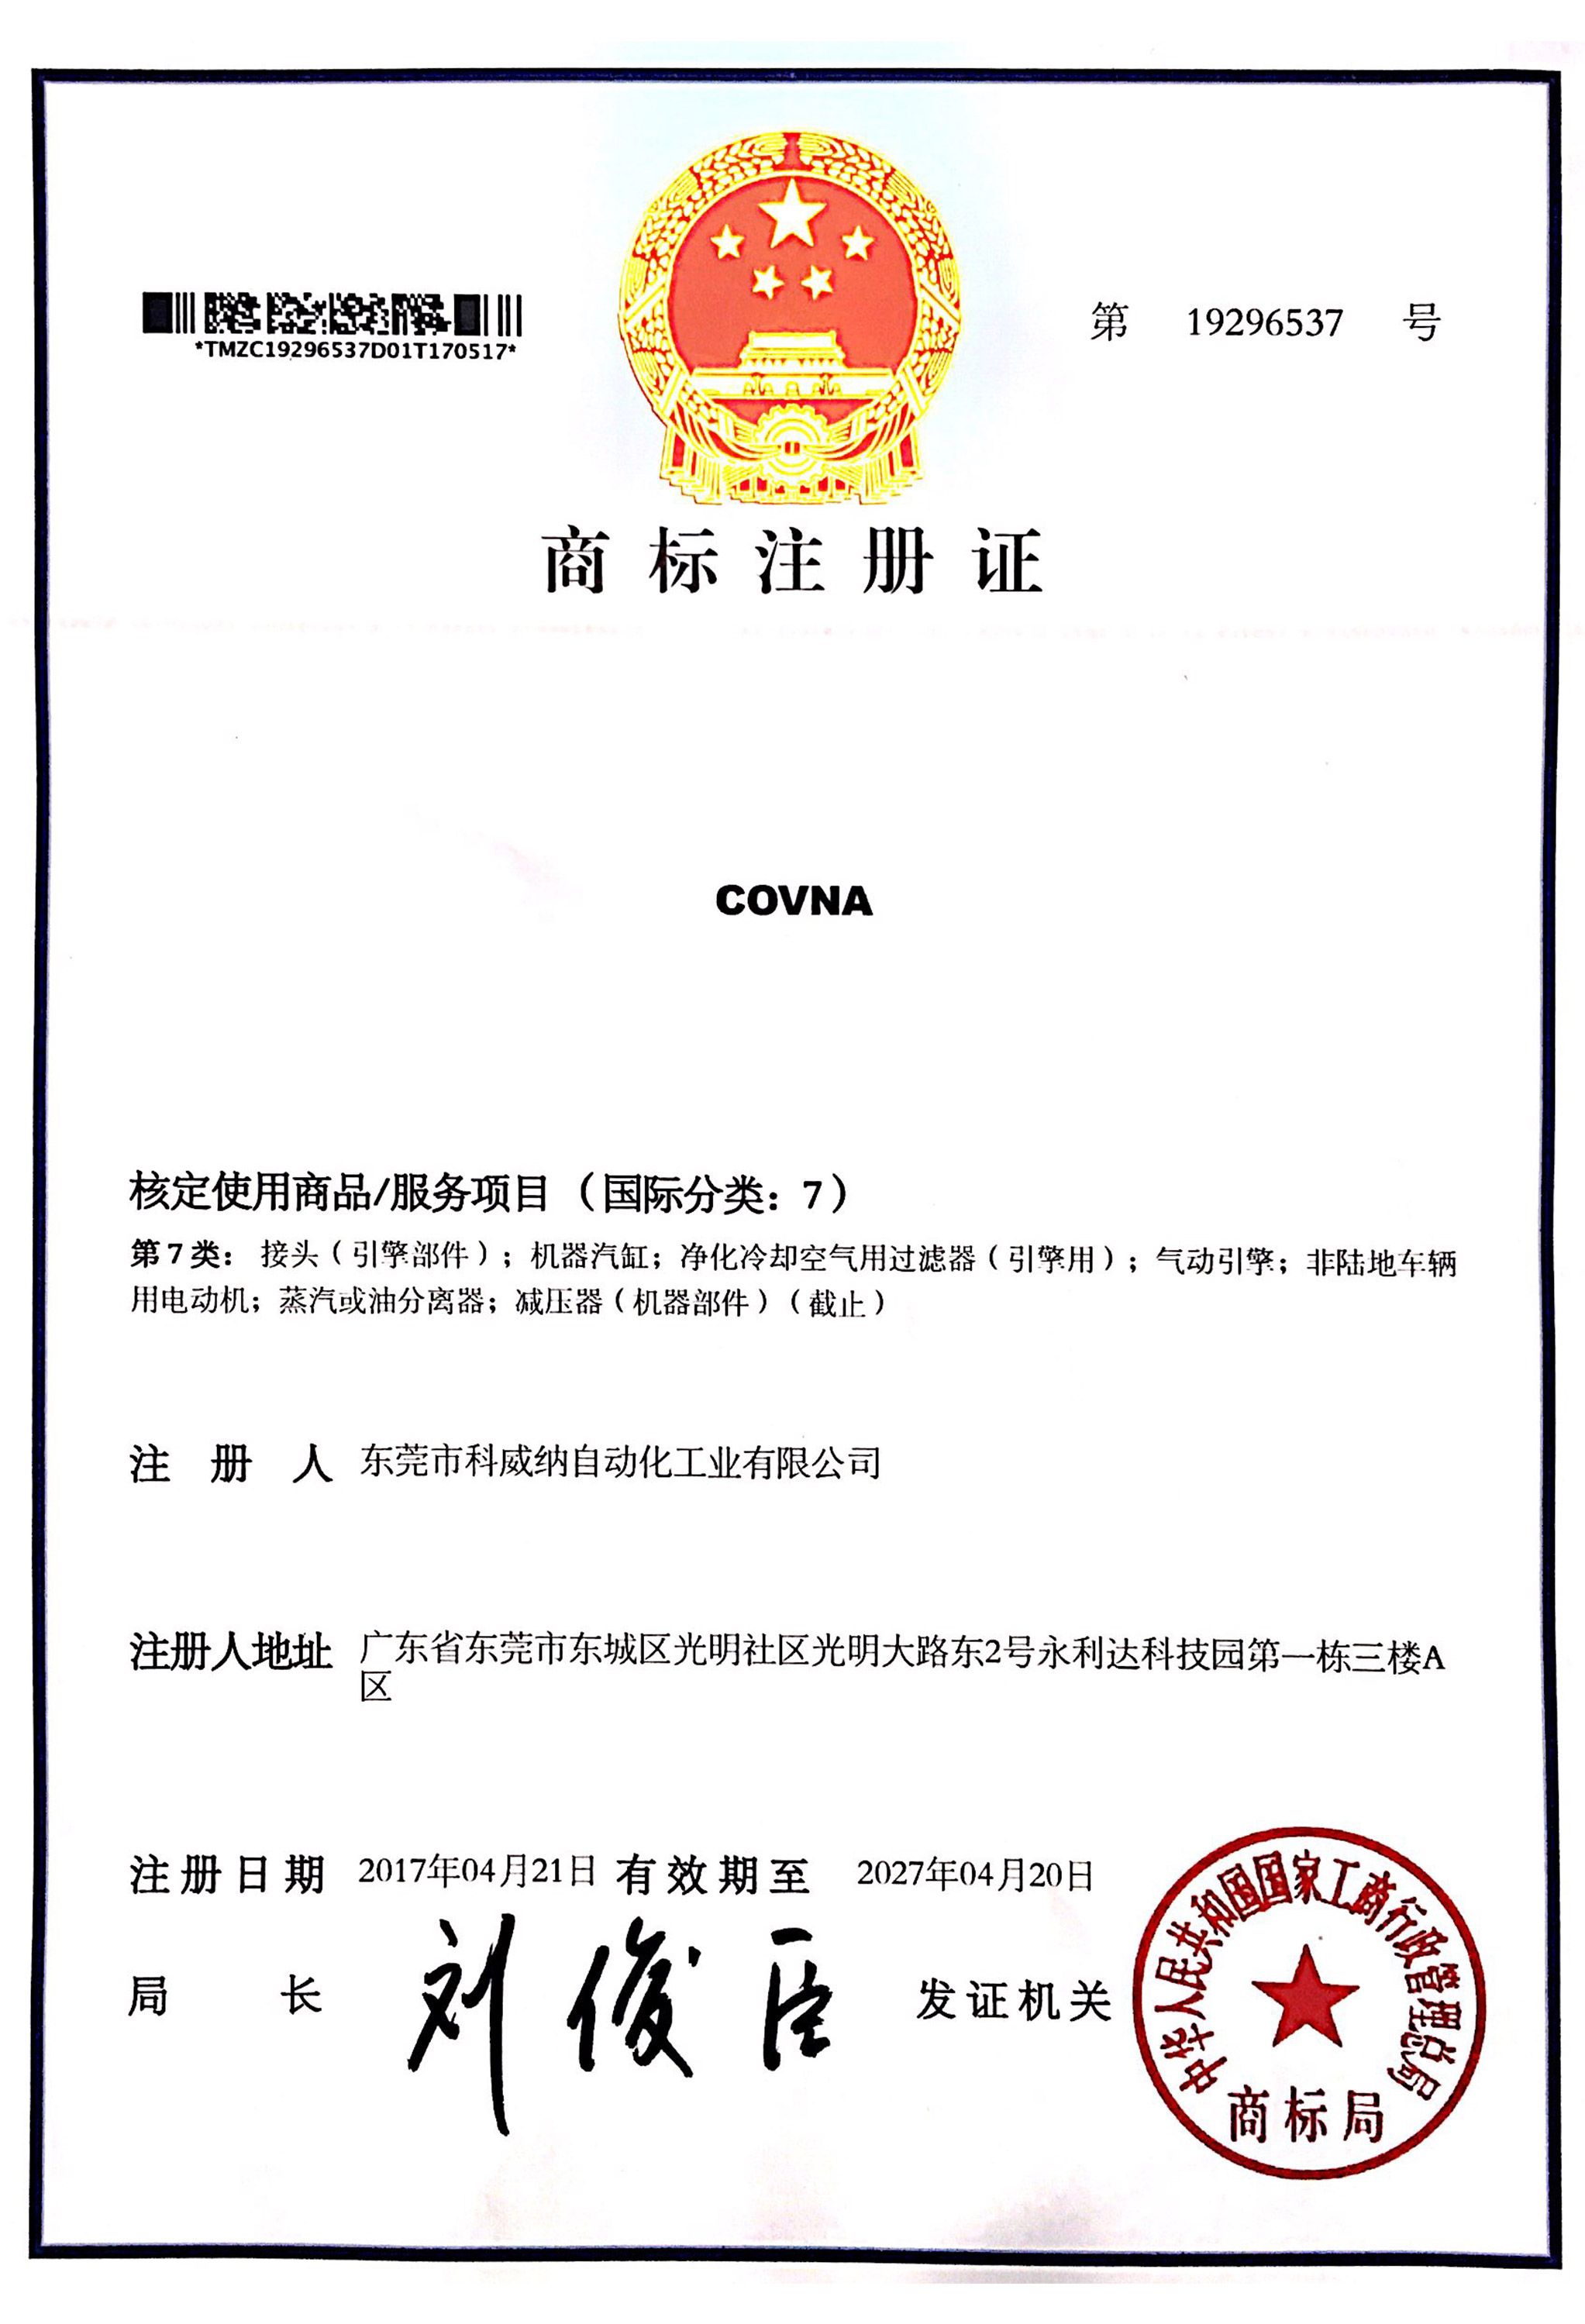 COVNA澳门尼威斯人商标证书